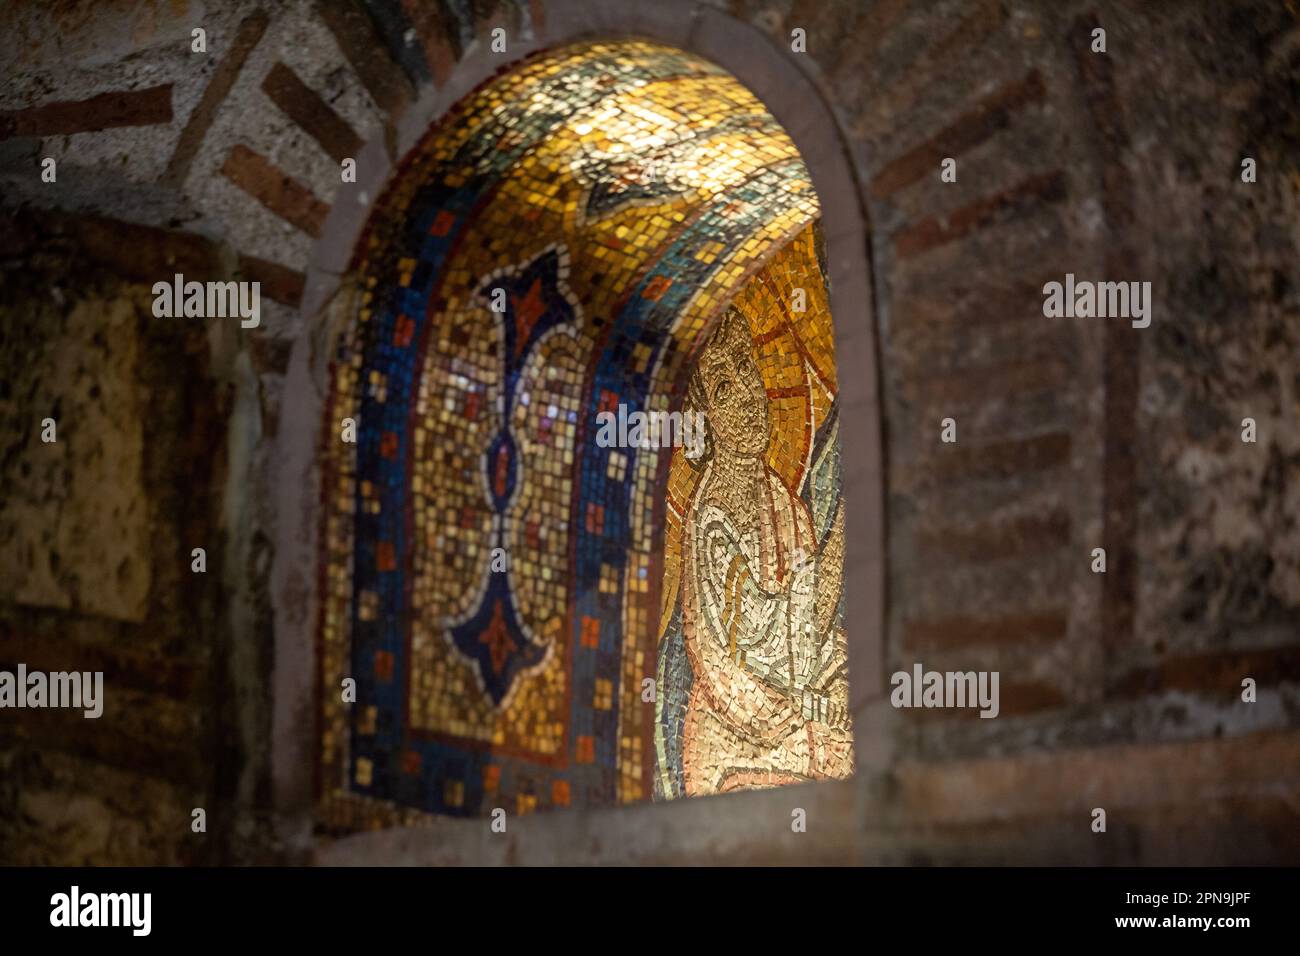 Particolare dell'affresco sopra l'ingresso della chiesa bizantina di Kapnikarea, ad Atene, Grecia. Questa è la figura del giovane Gesù nelle mani di Maria. Foto Stock